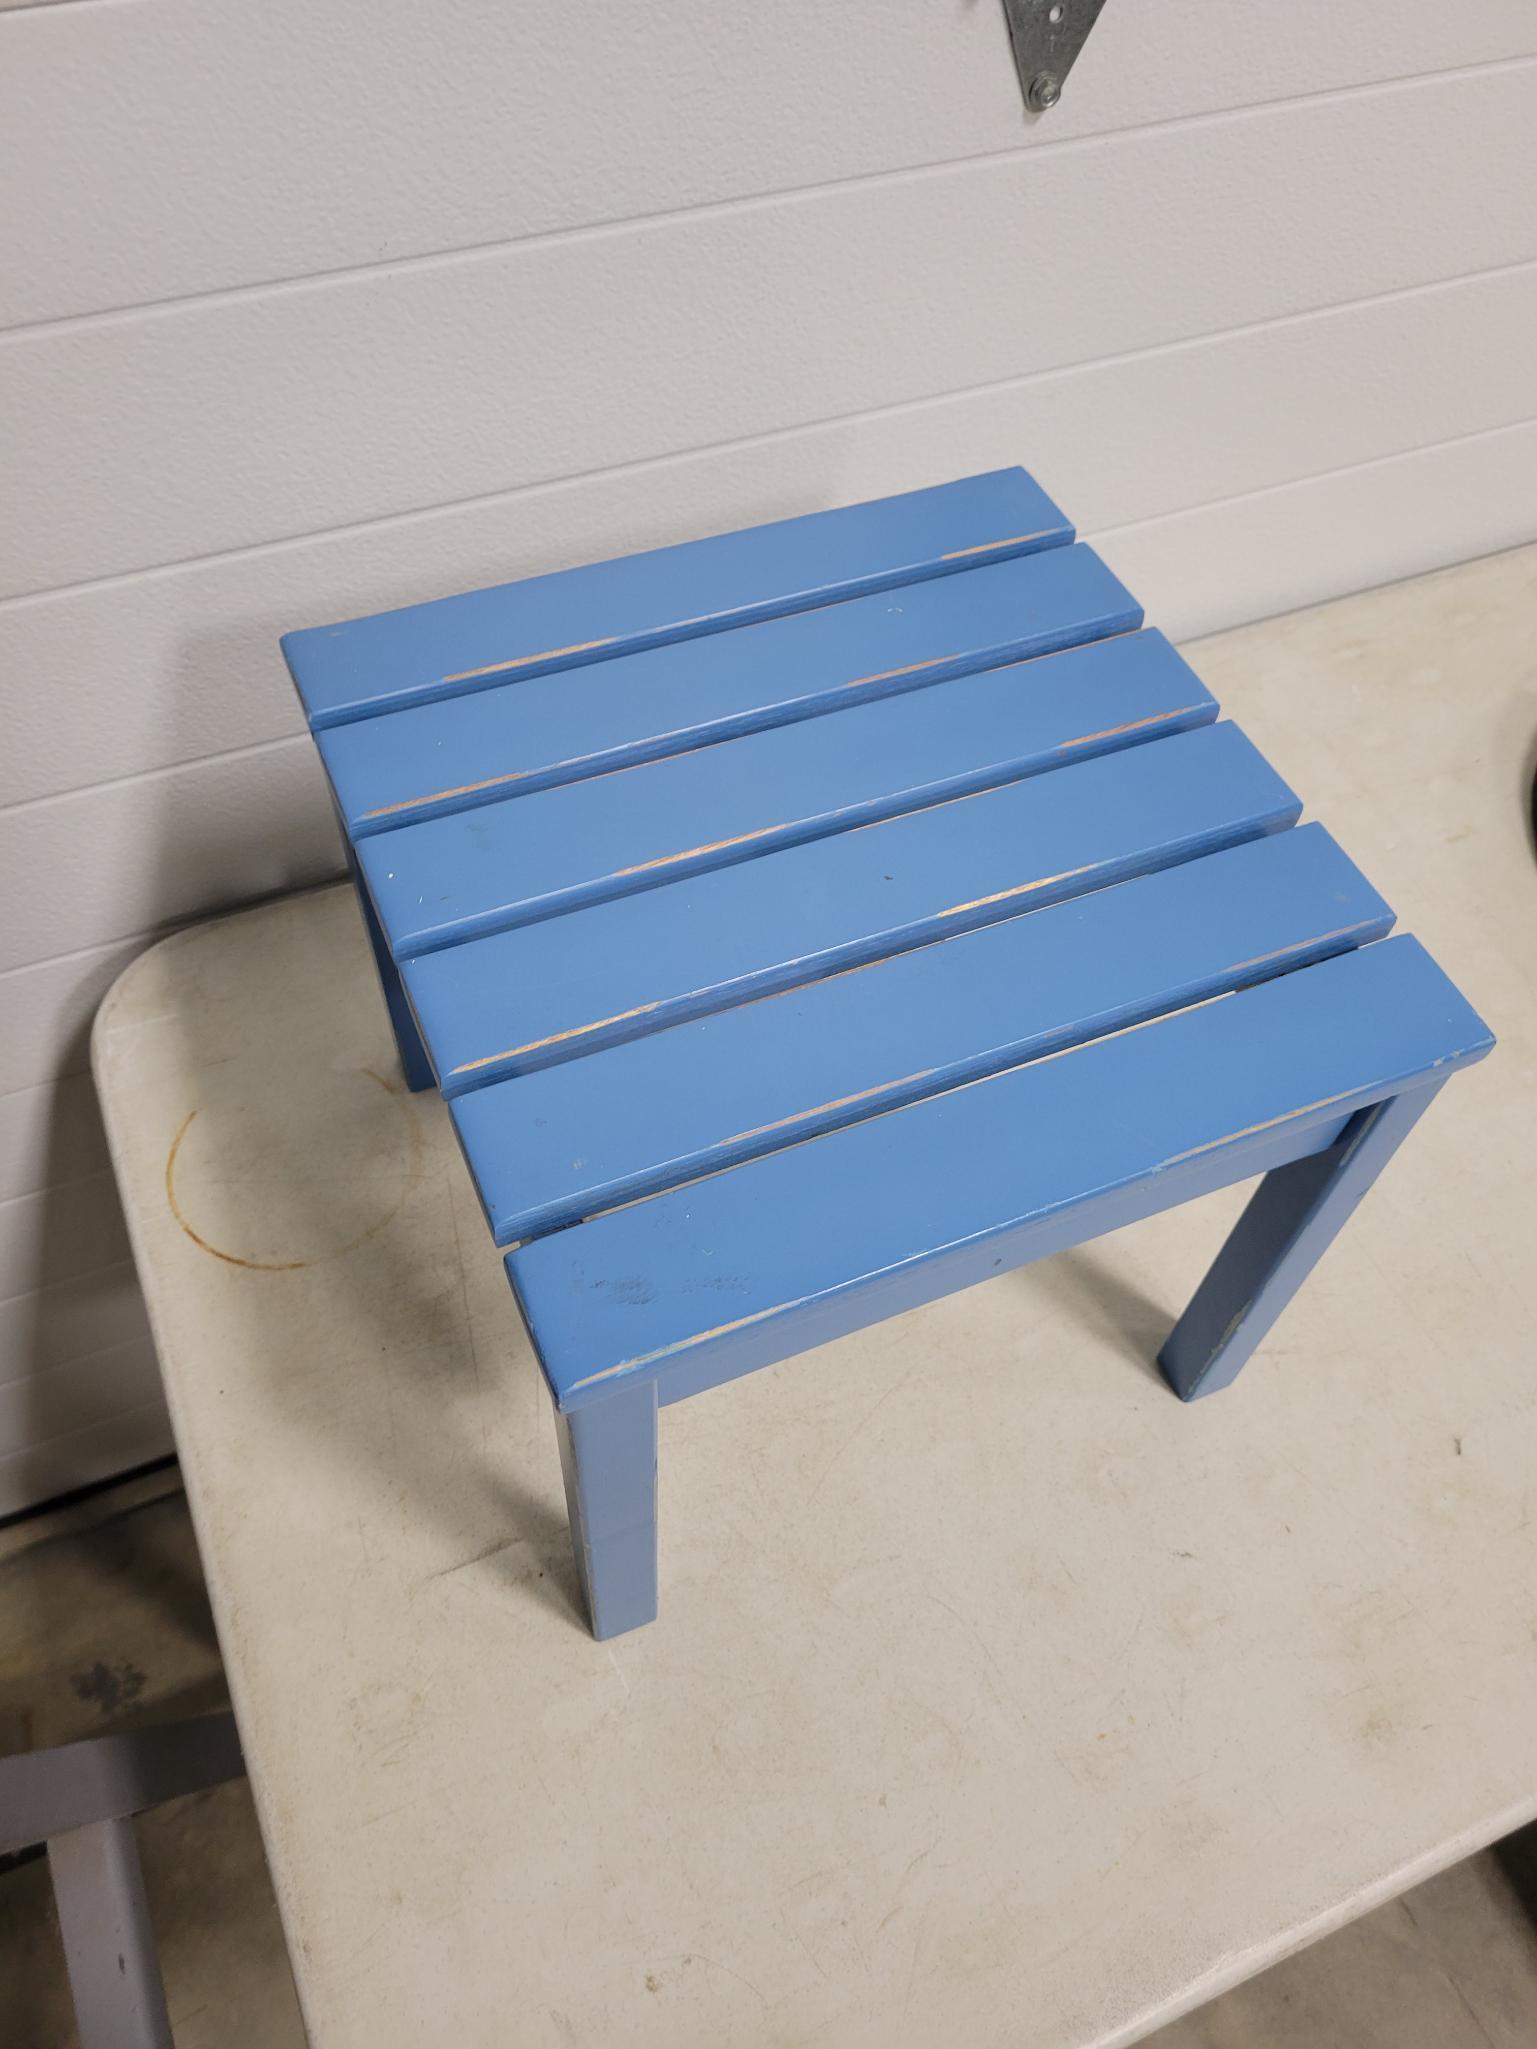 Blue stool 15in by 12in